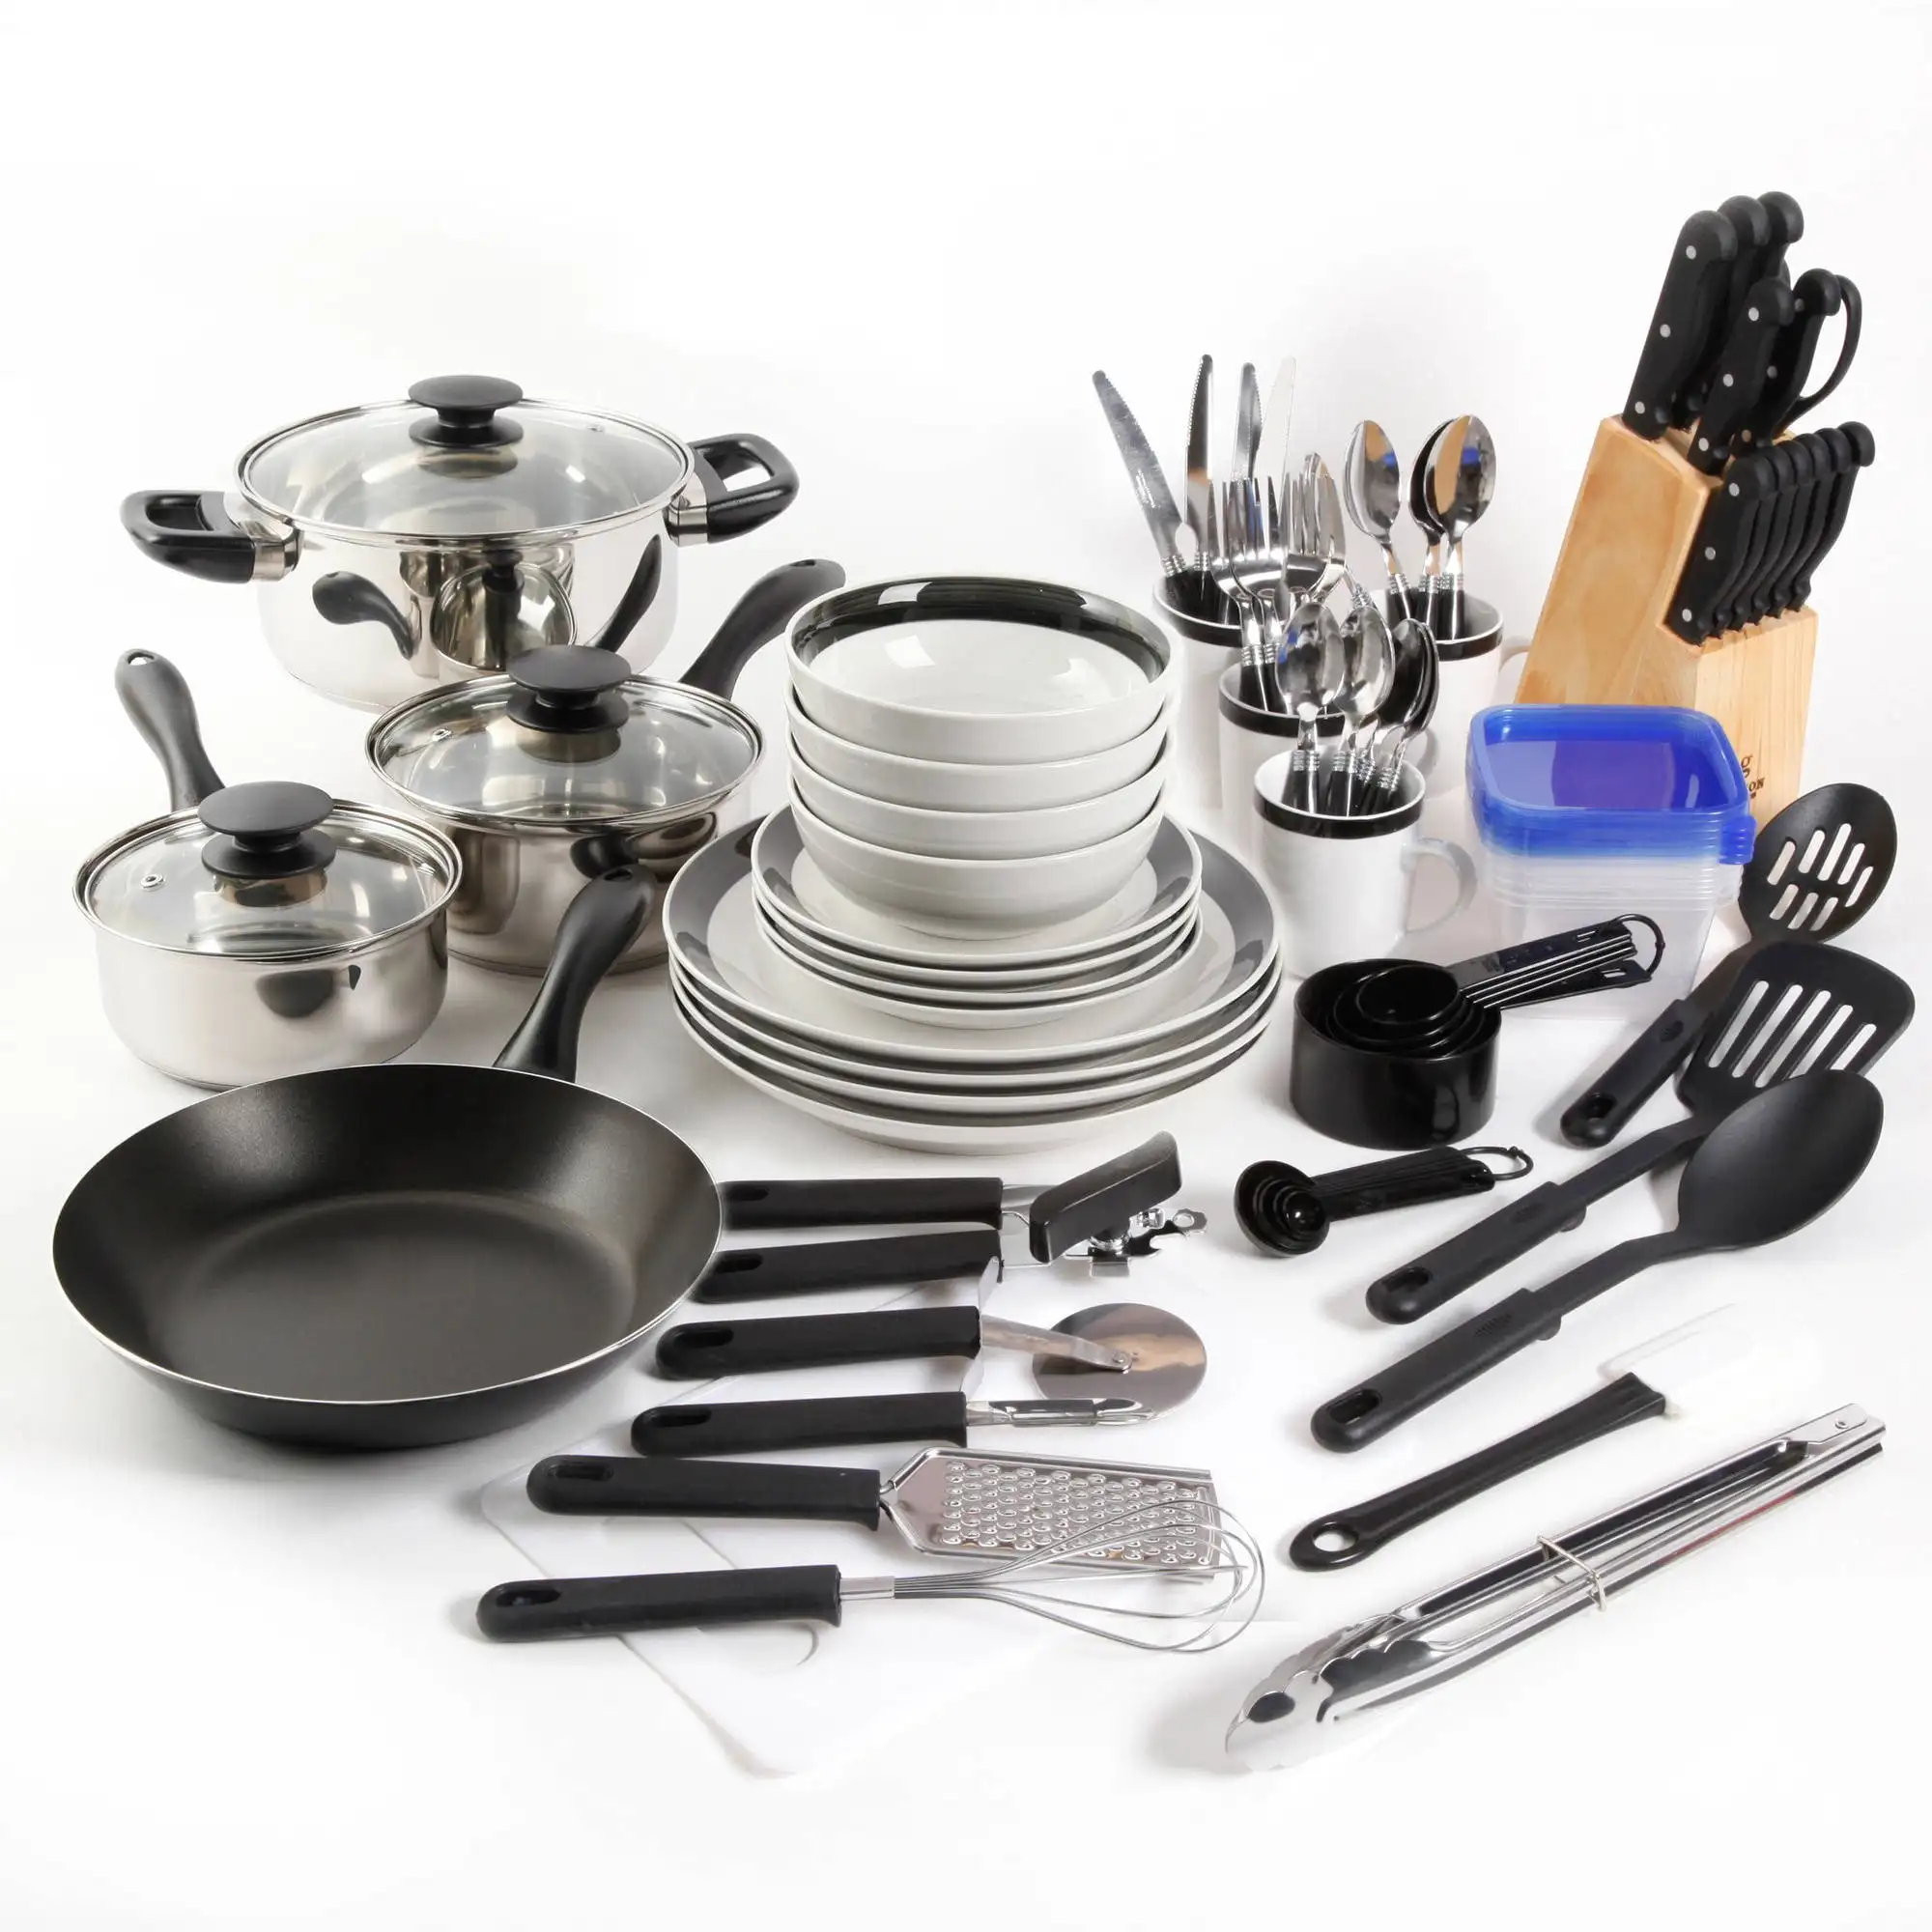 

83-Piece Combo Set, Black pots and pans set cooking pots set cookware